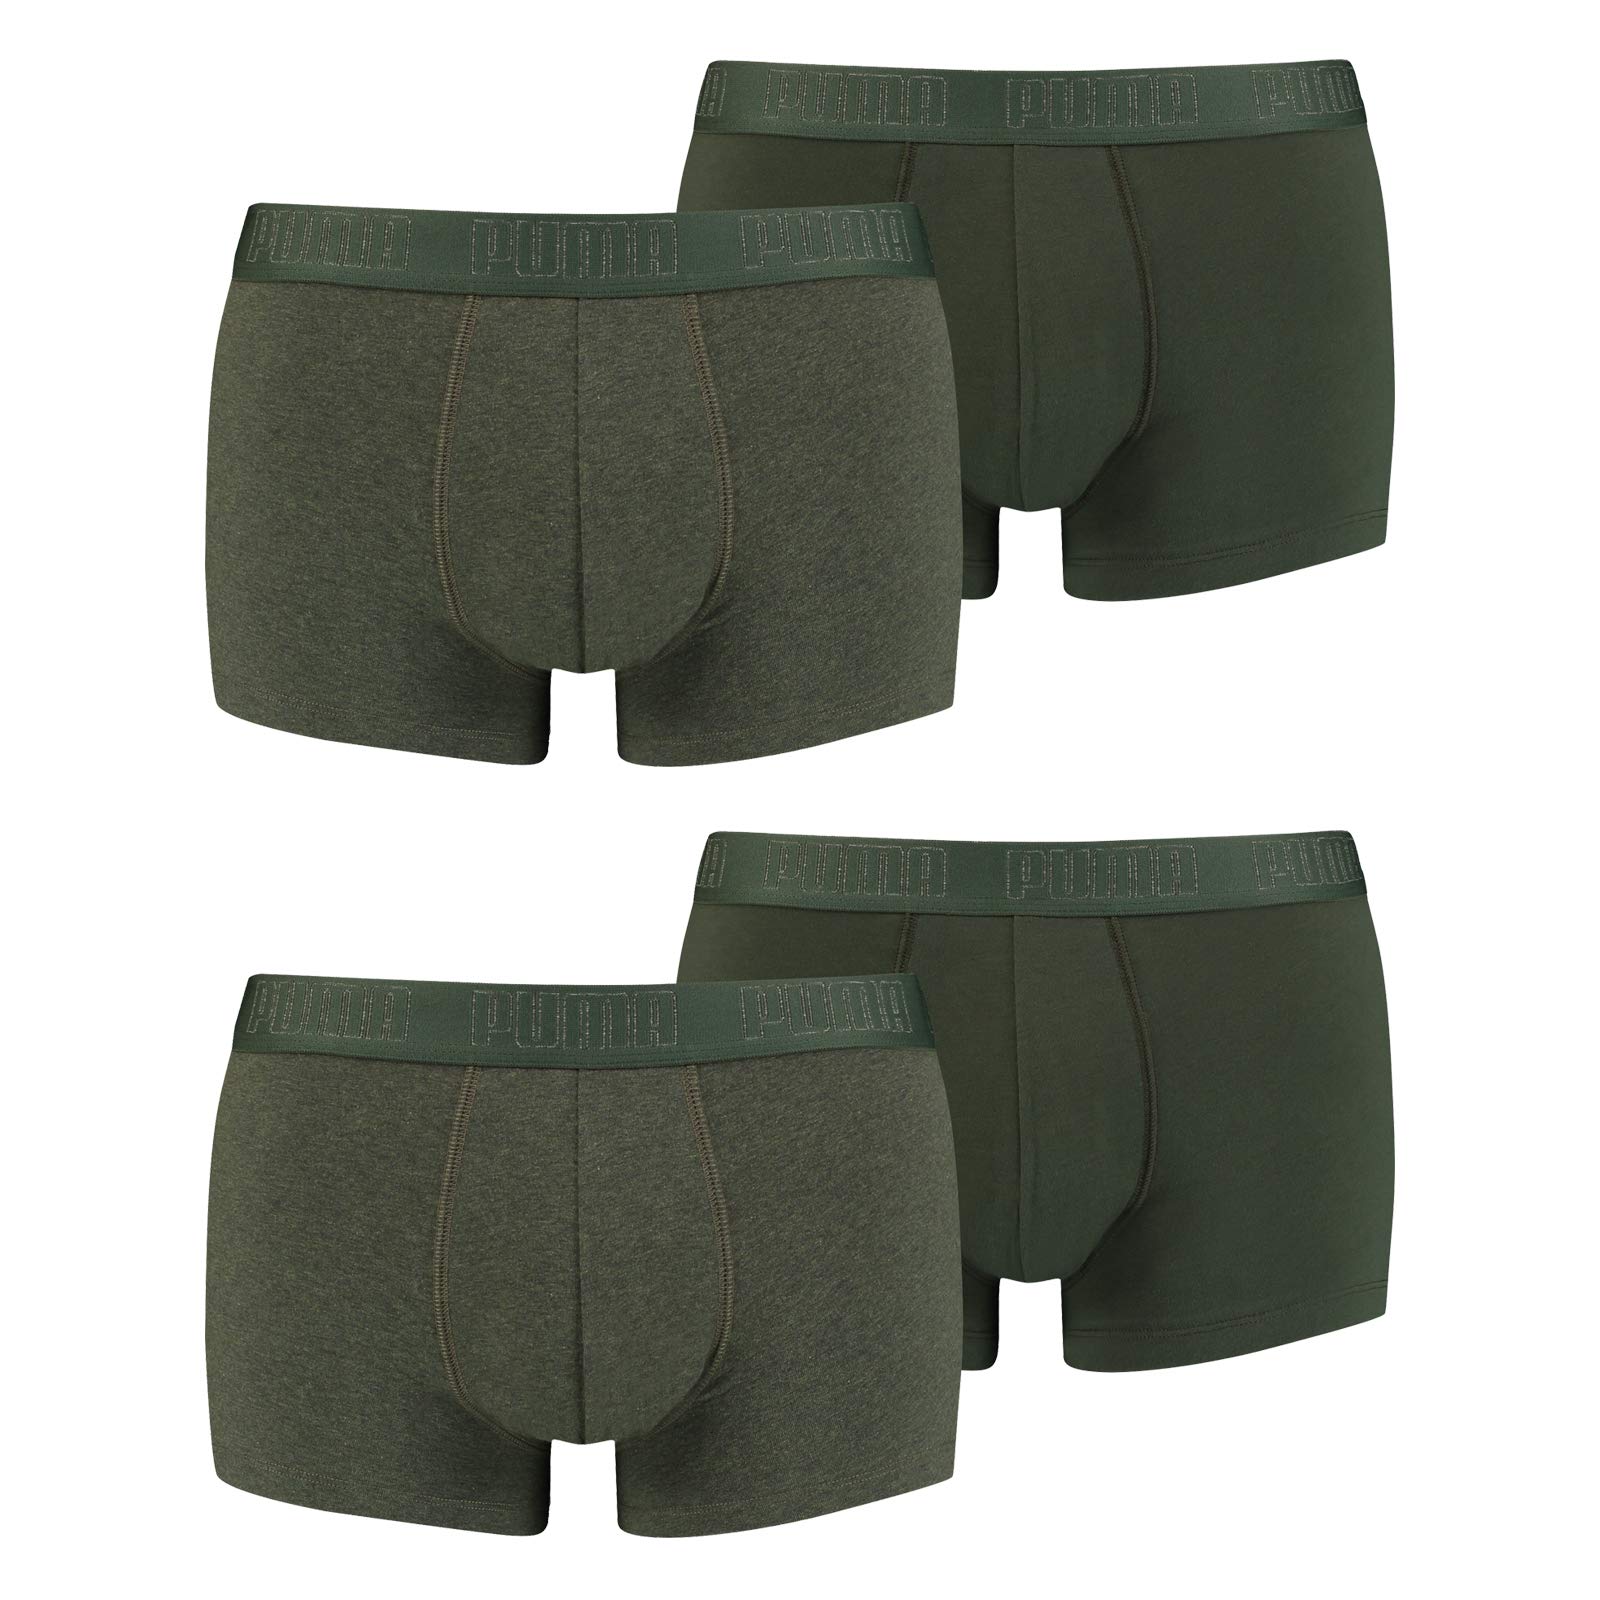 PUMA Herren Shortboxer Unterhosen Trunks 4er Pack, Wäschegröße:M, Artikel:-009 Green Melange